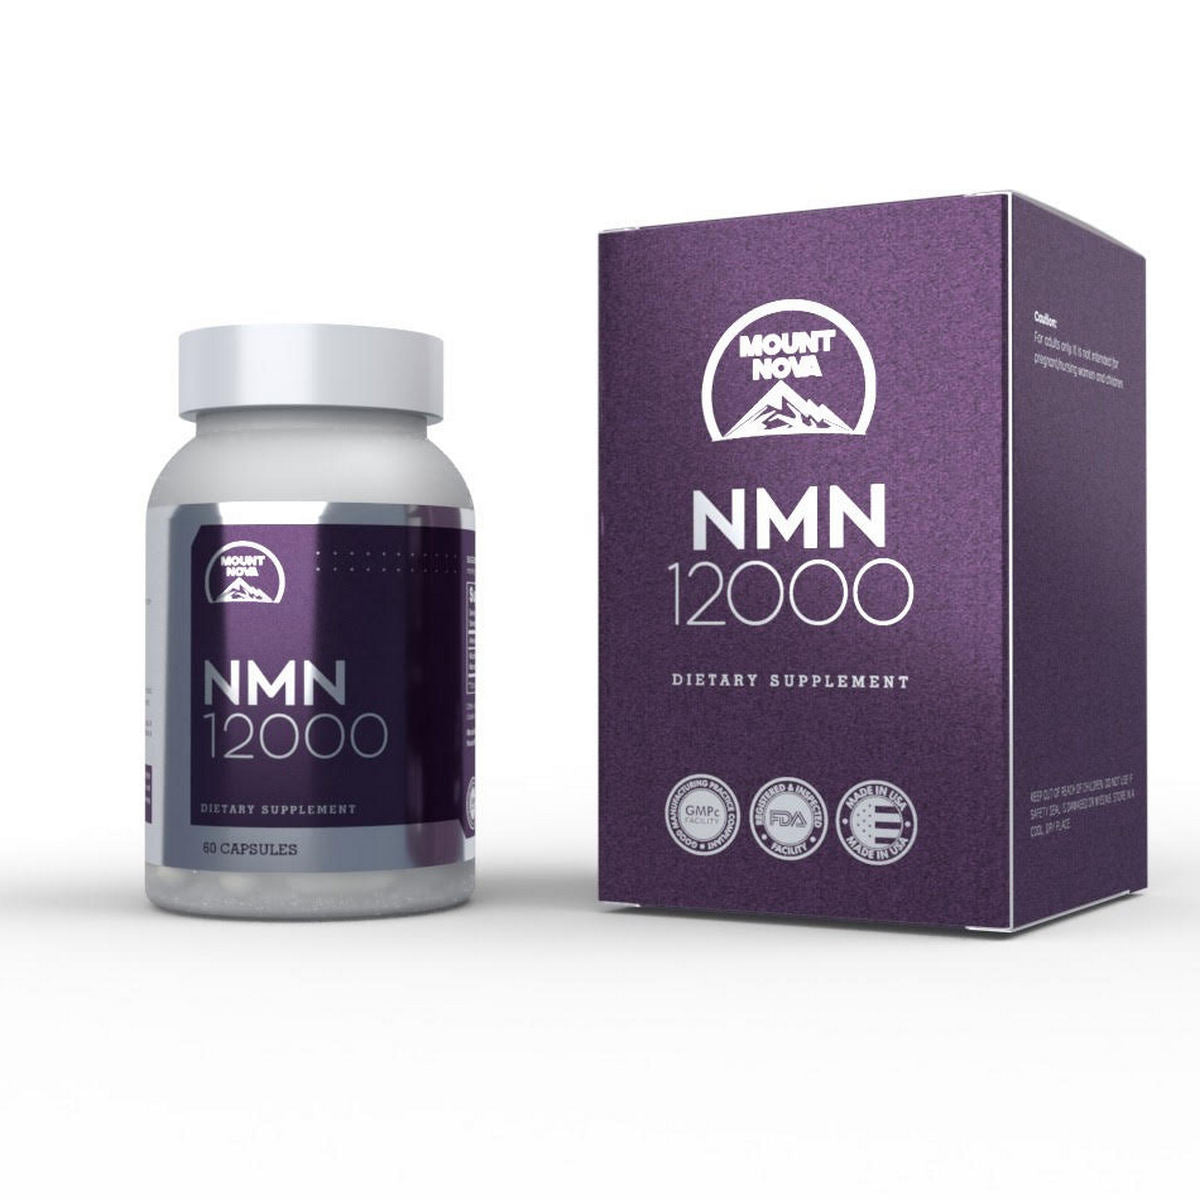 諾華山NMN 12000mg 功效| 抗衰老補充劑– Mount Nova